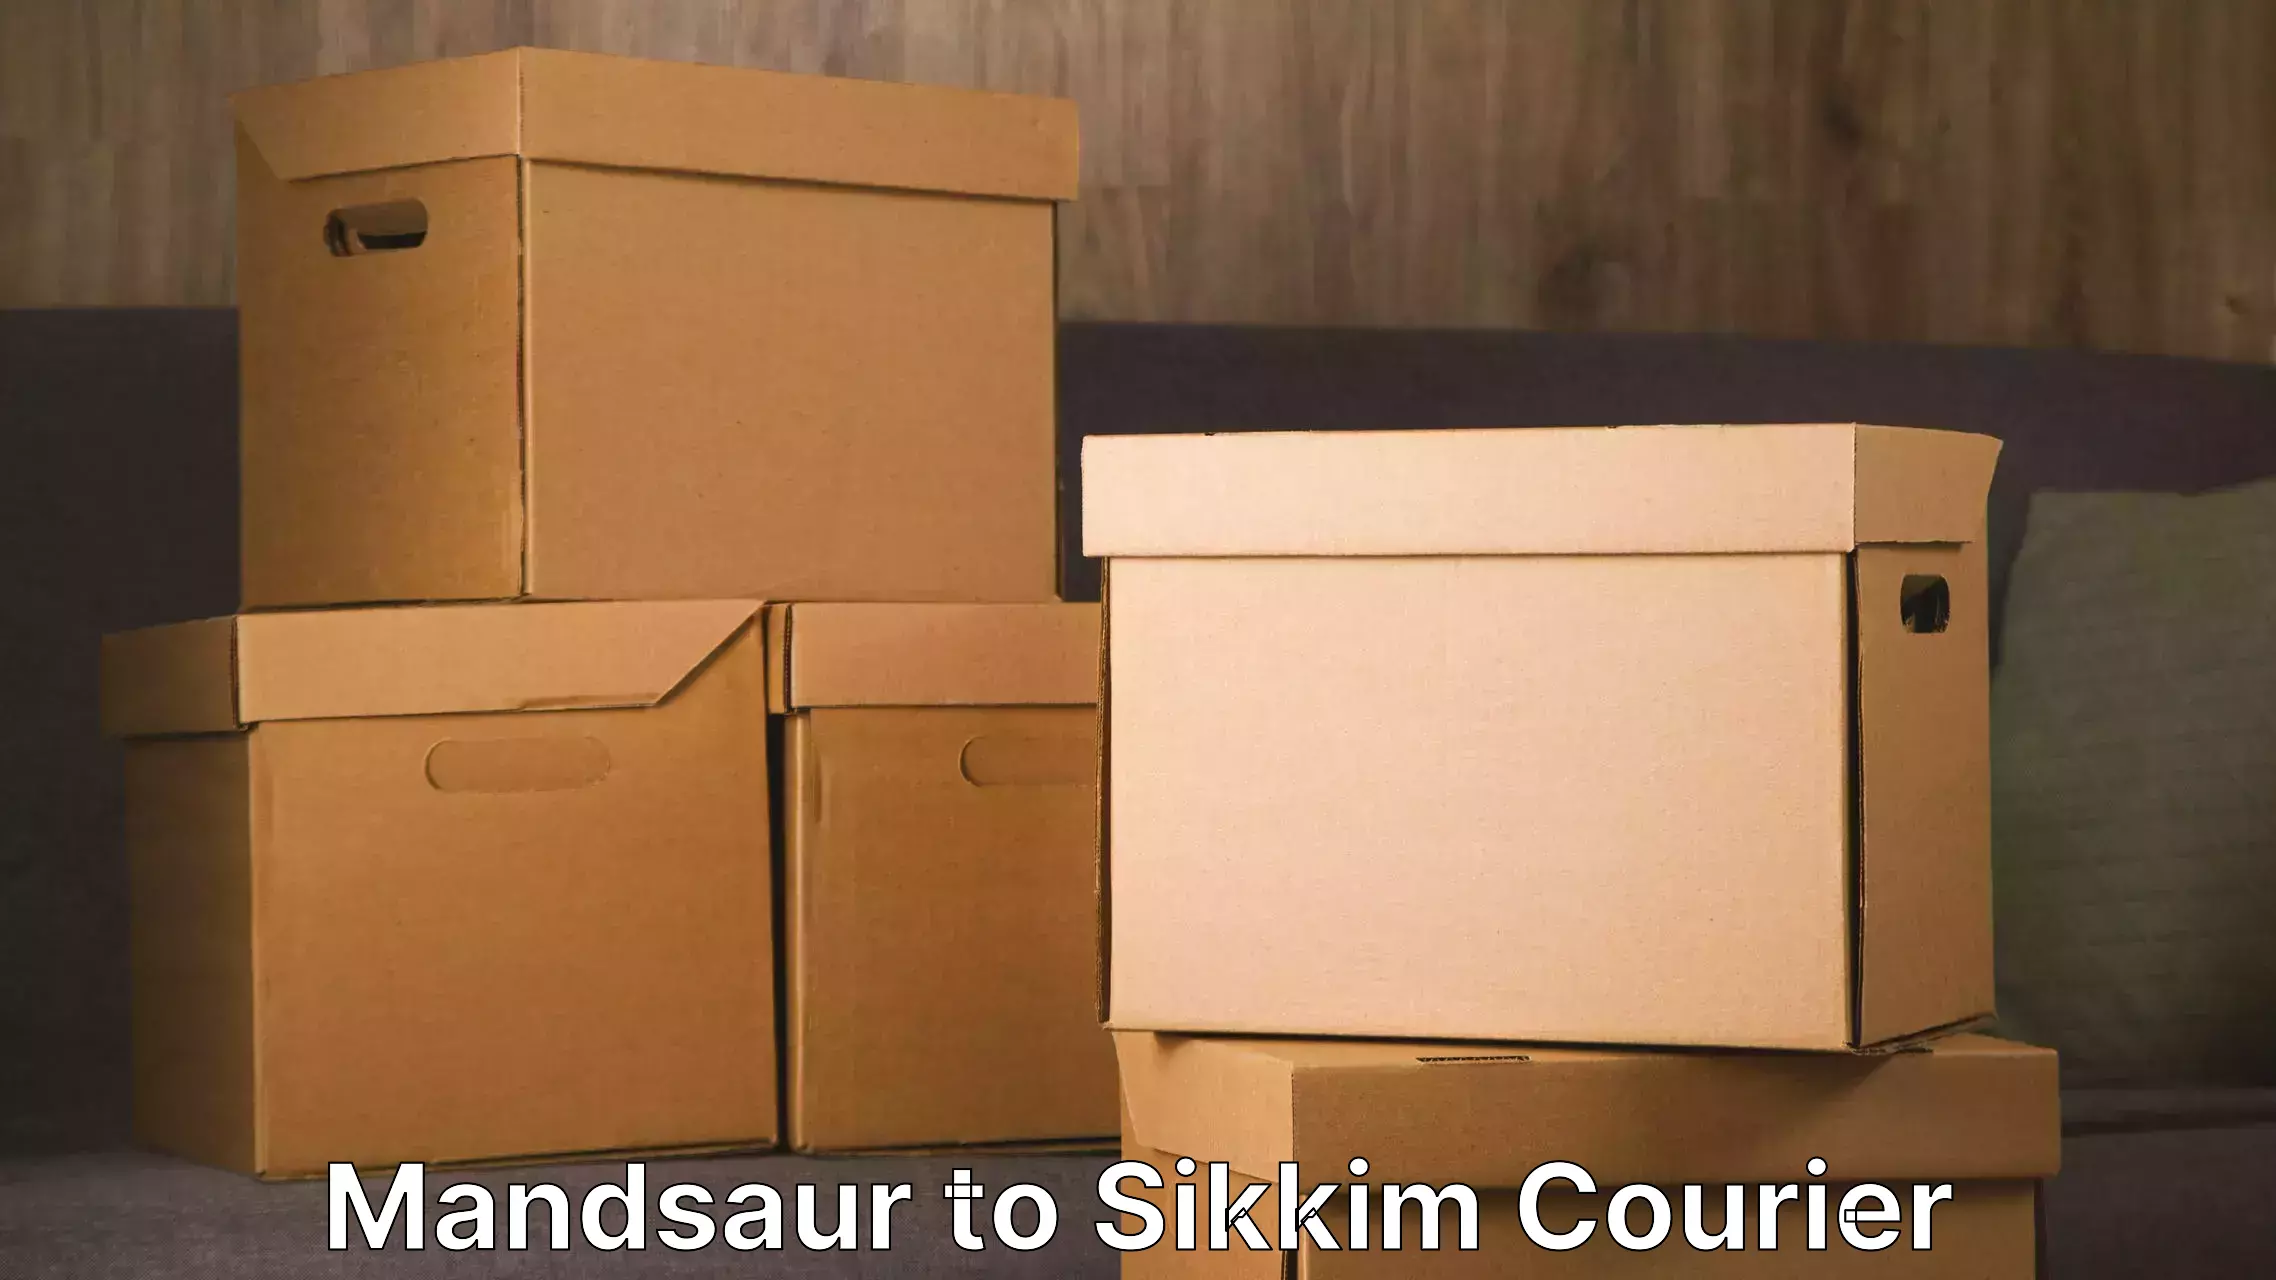 Furniture transport professionals Mandsaur to Sikkim